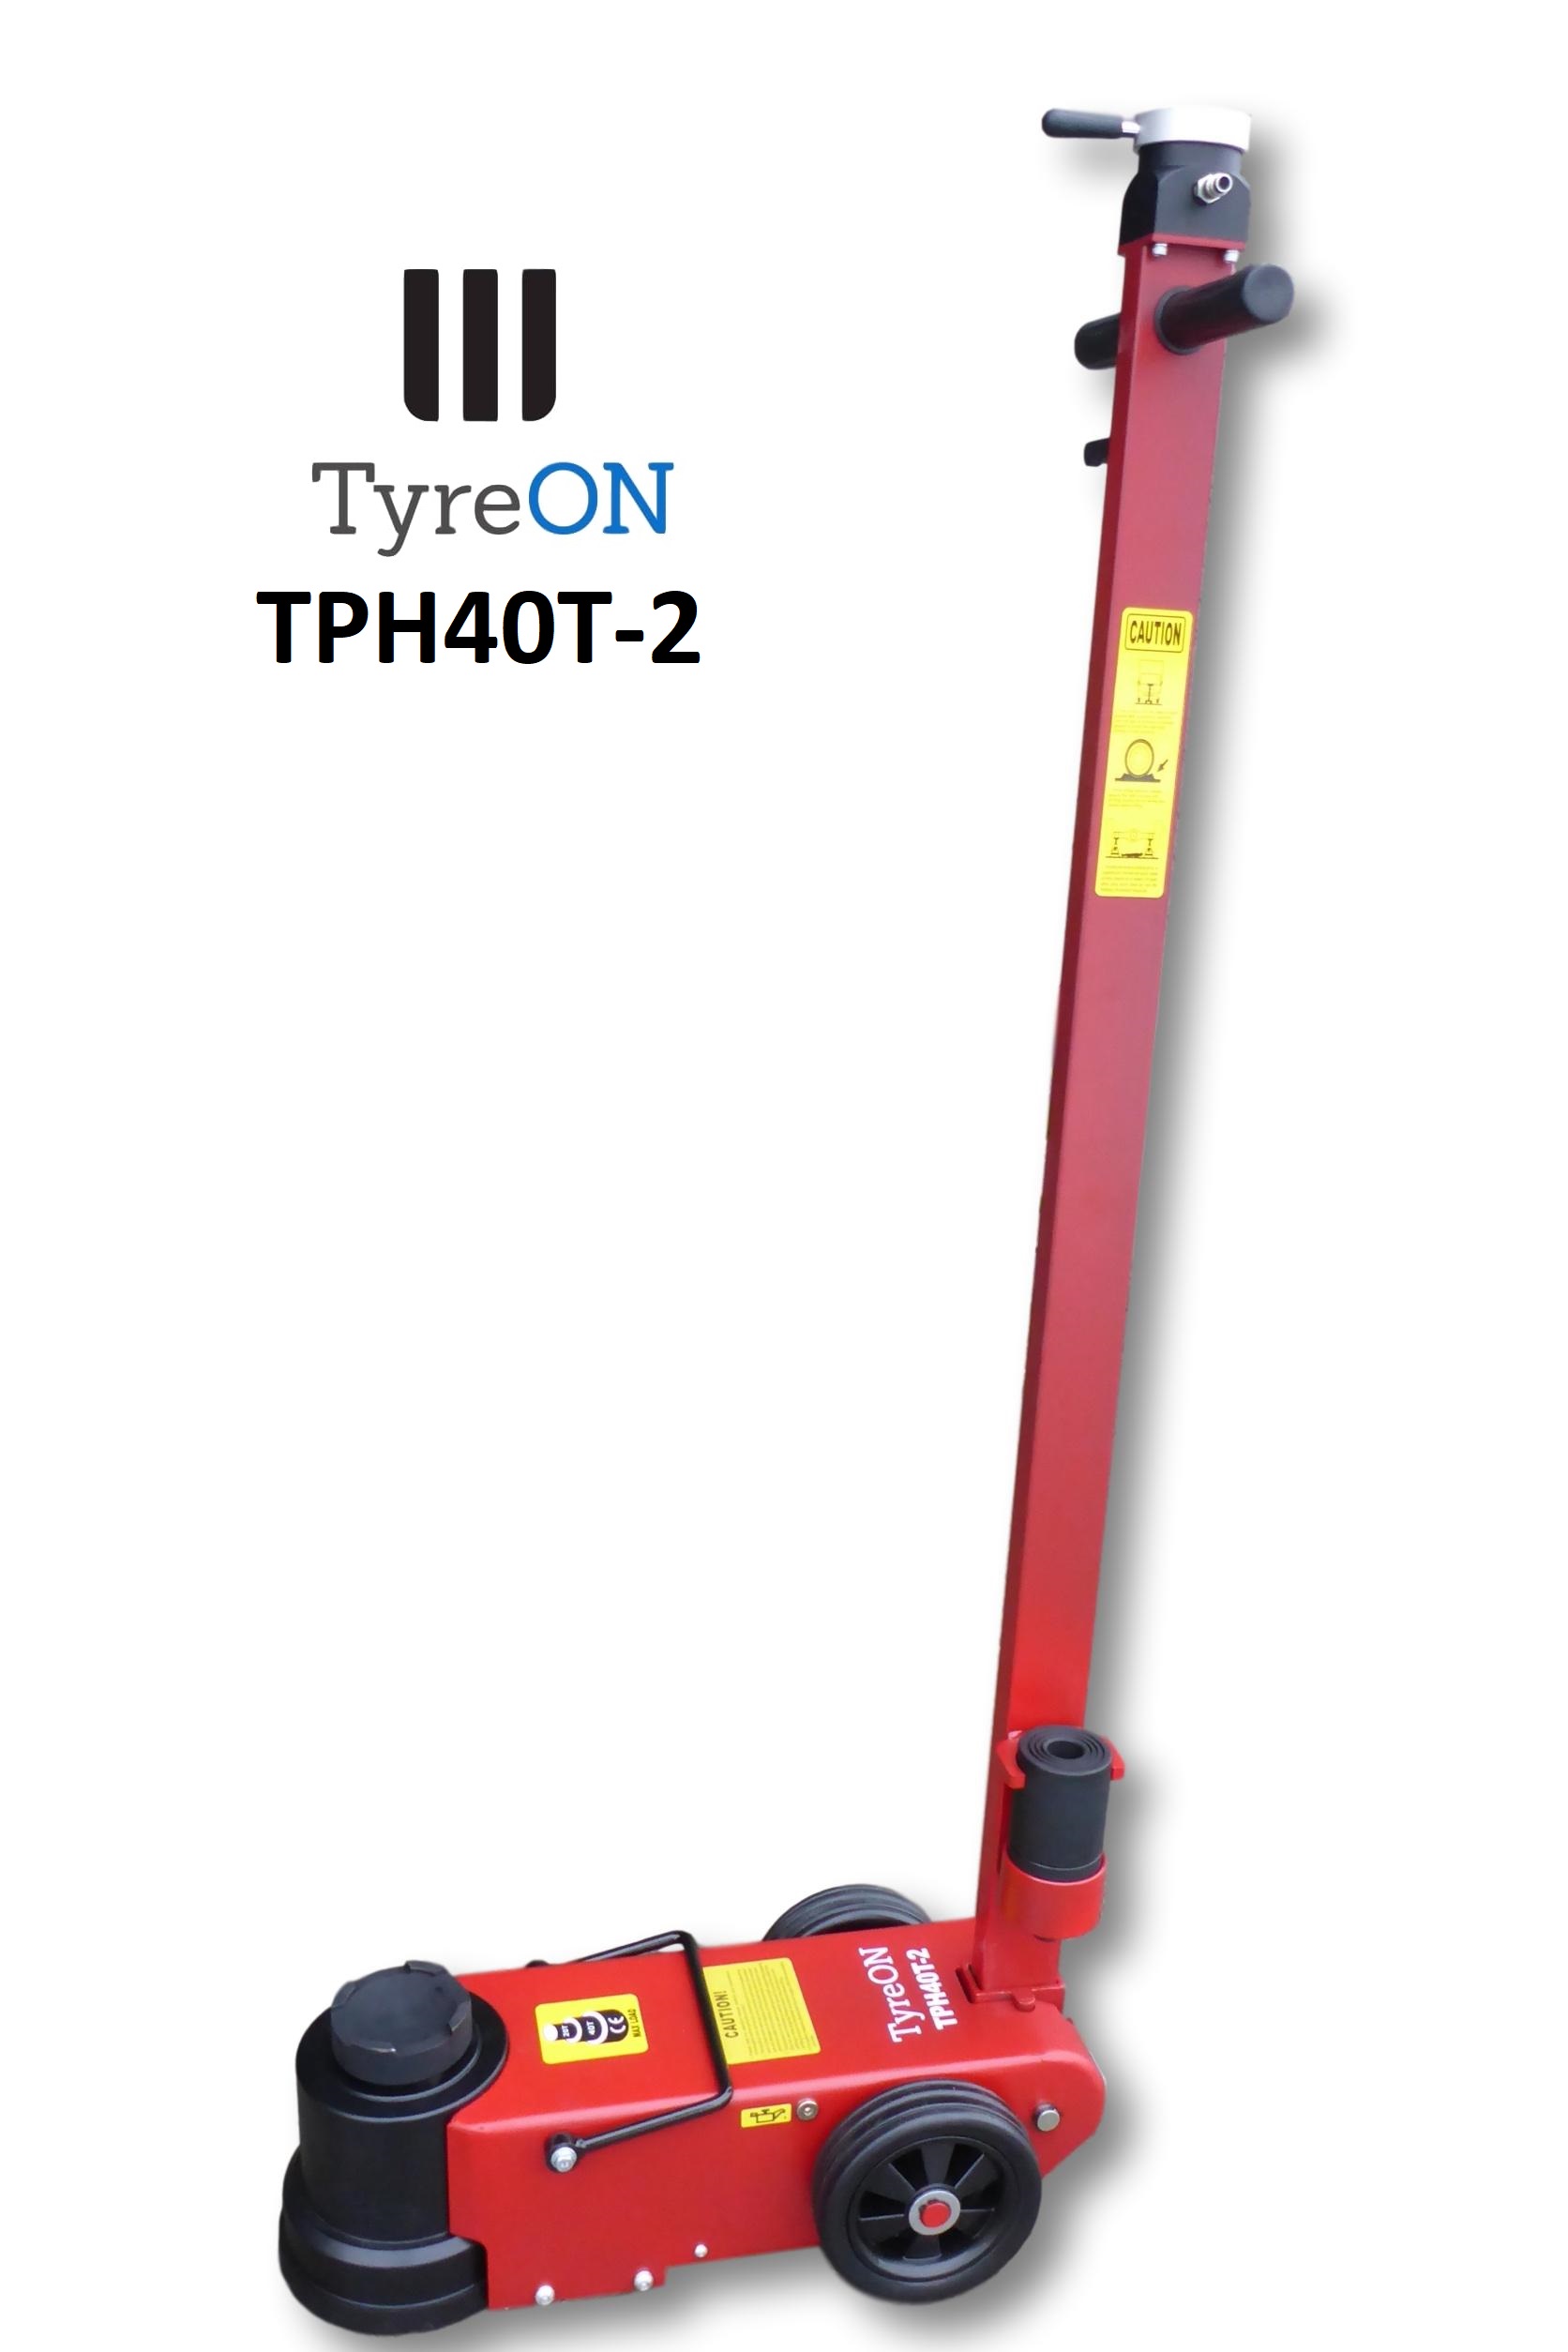 TyreON TPH60T-3 lucht hydraulische garagekrik